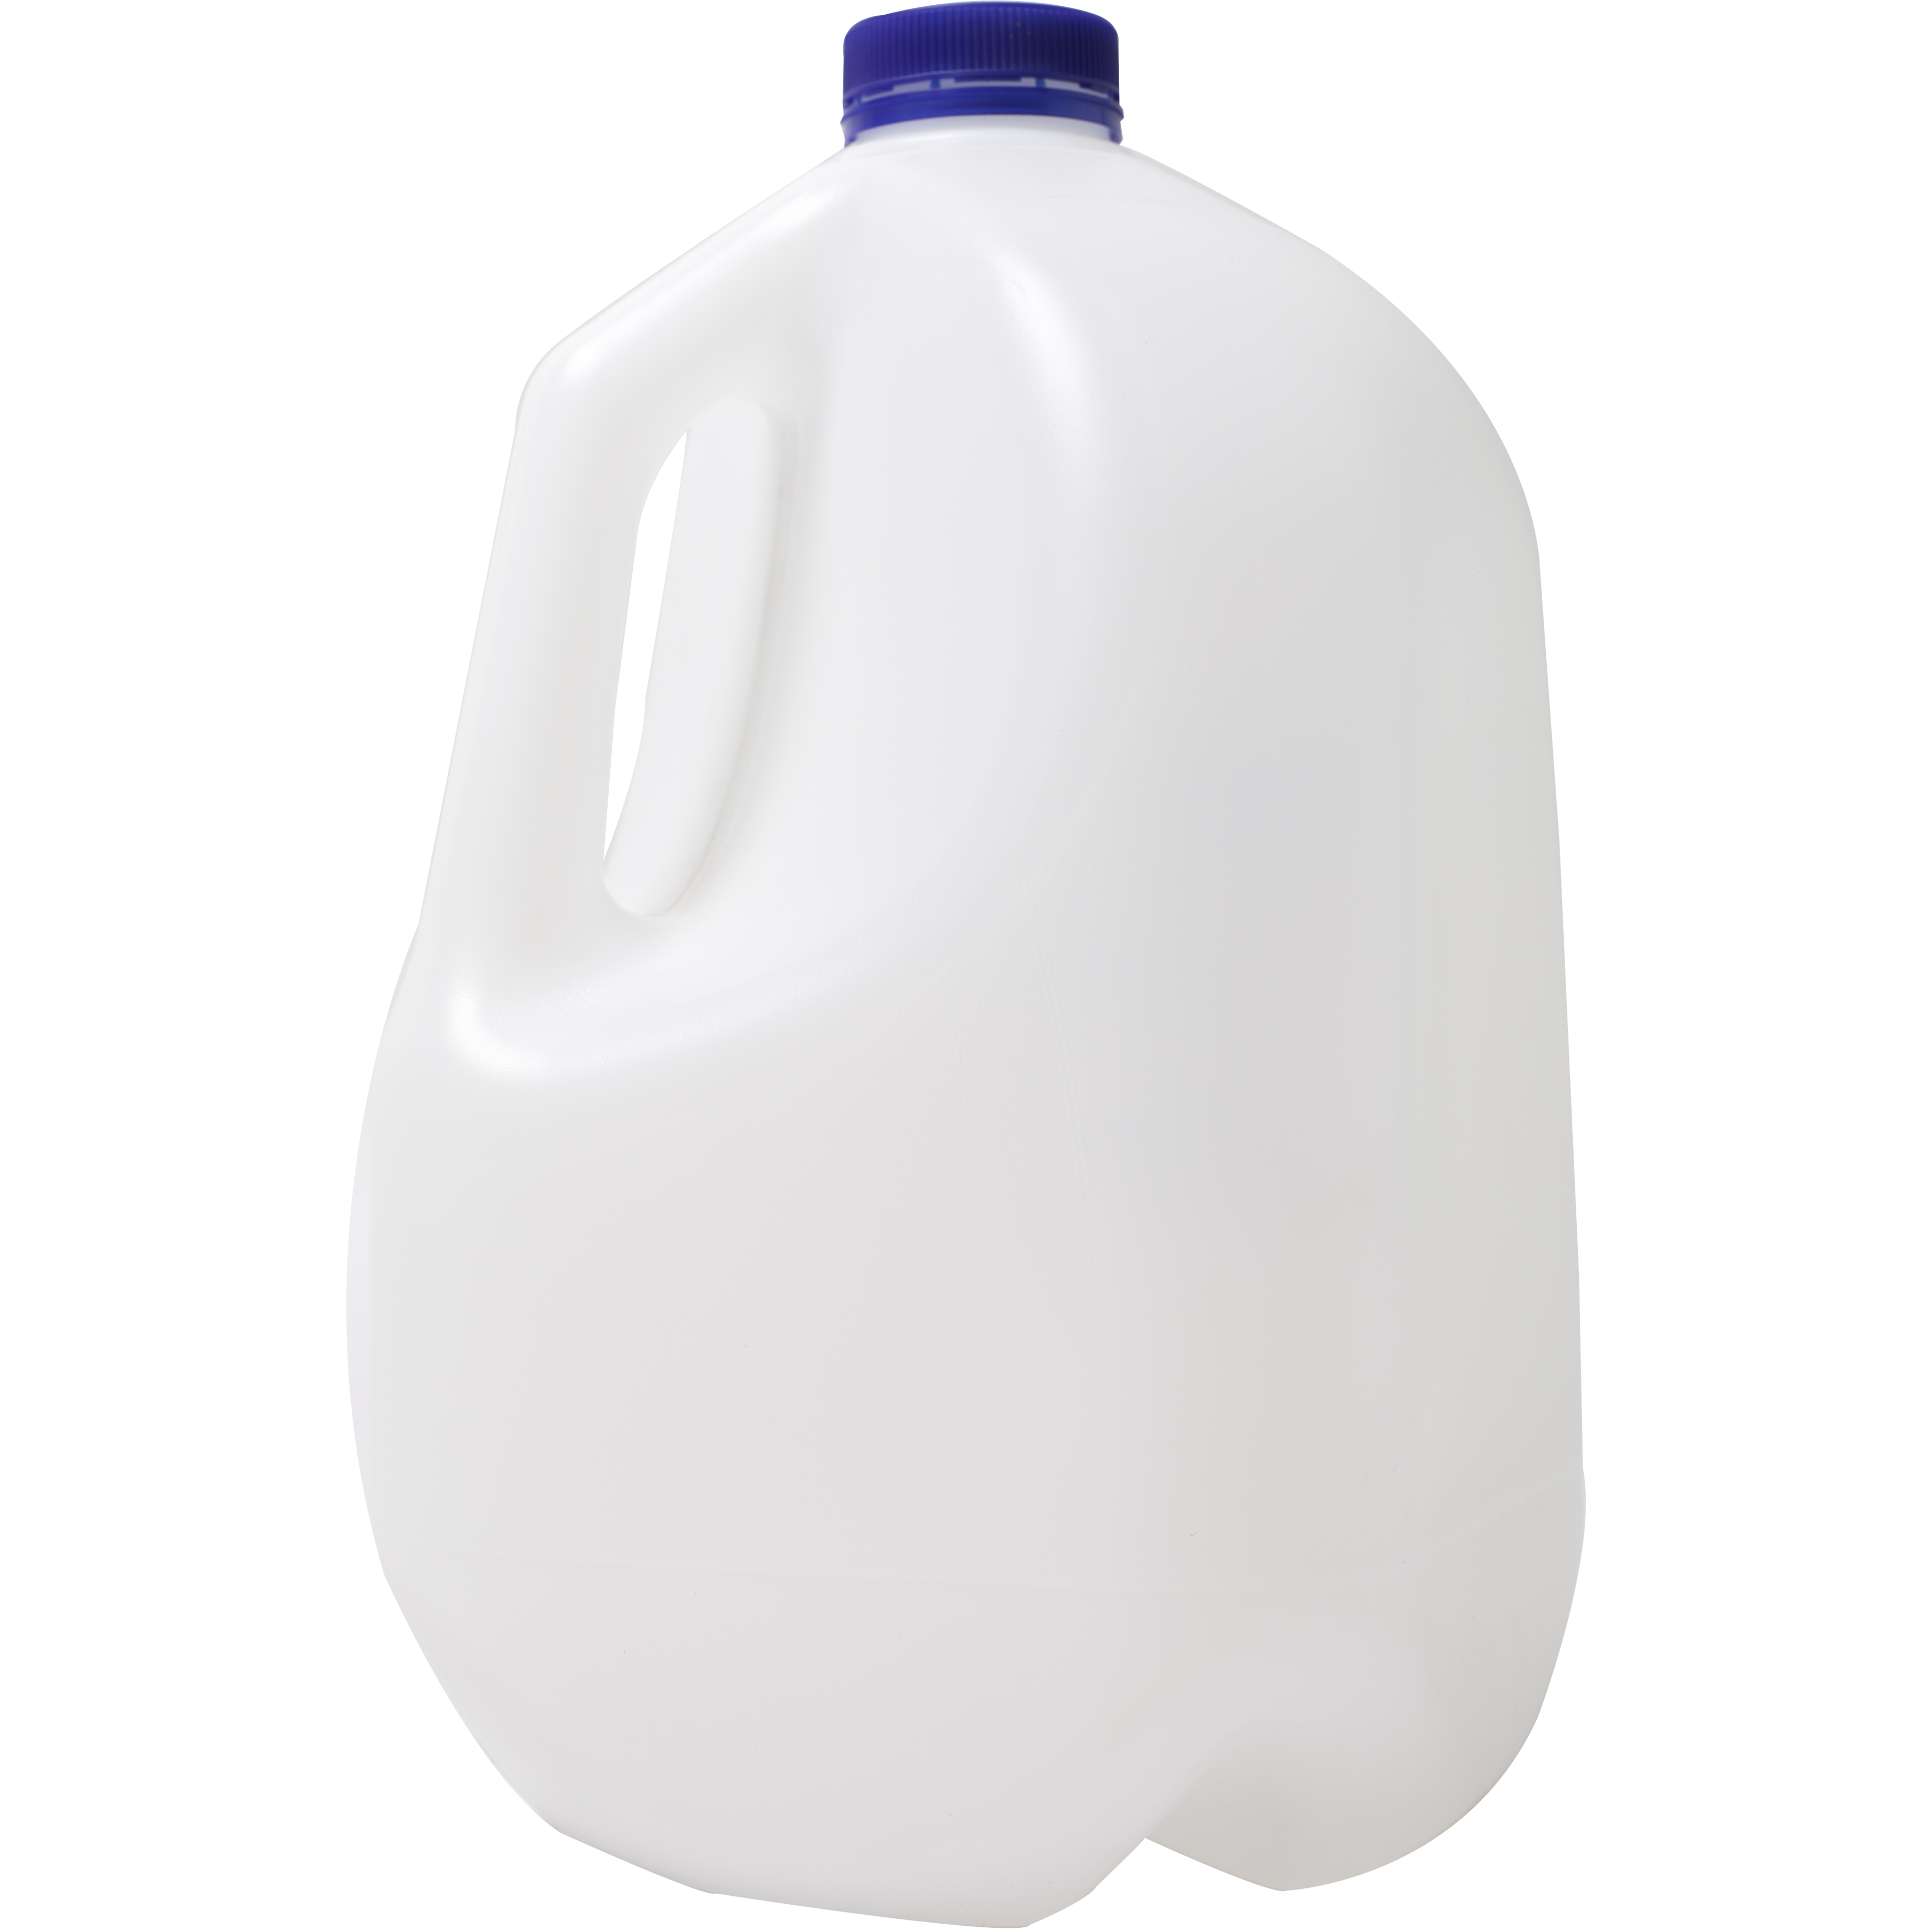 Молоко в пластиковой бутылке фото